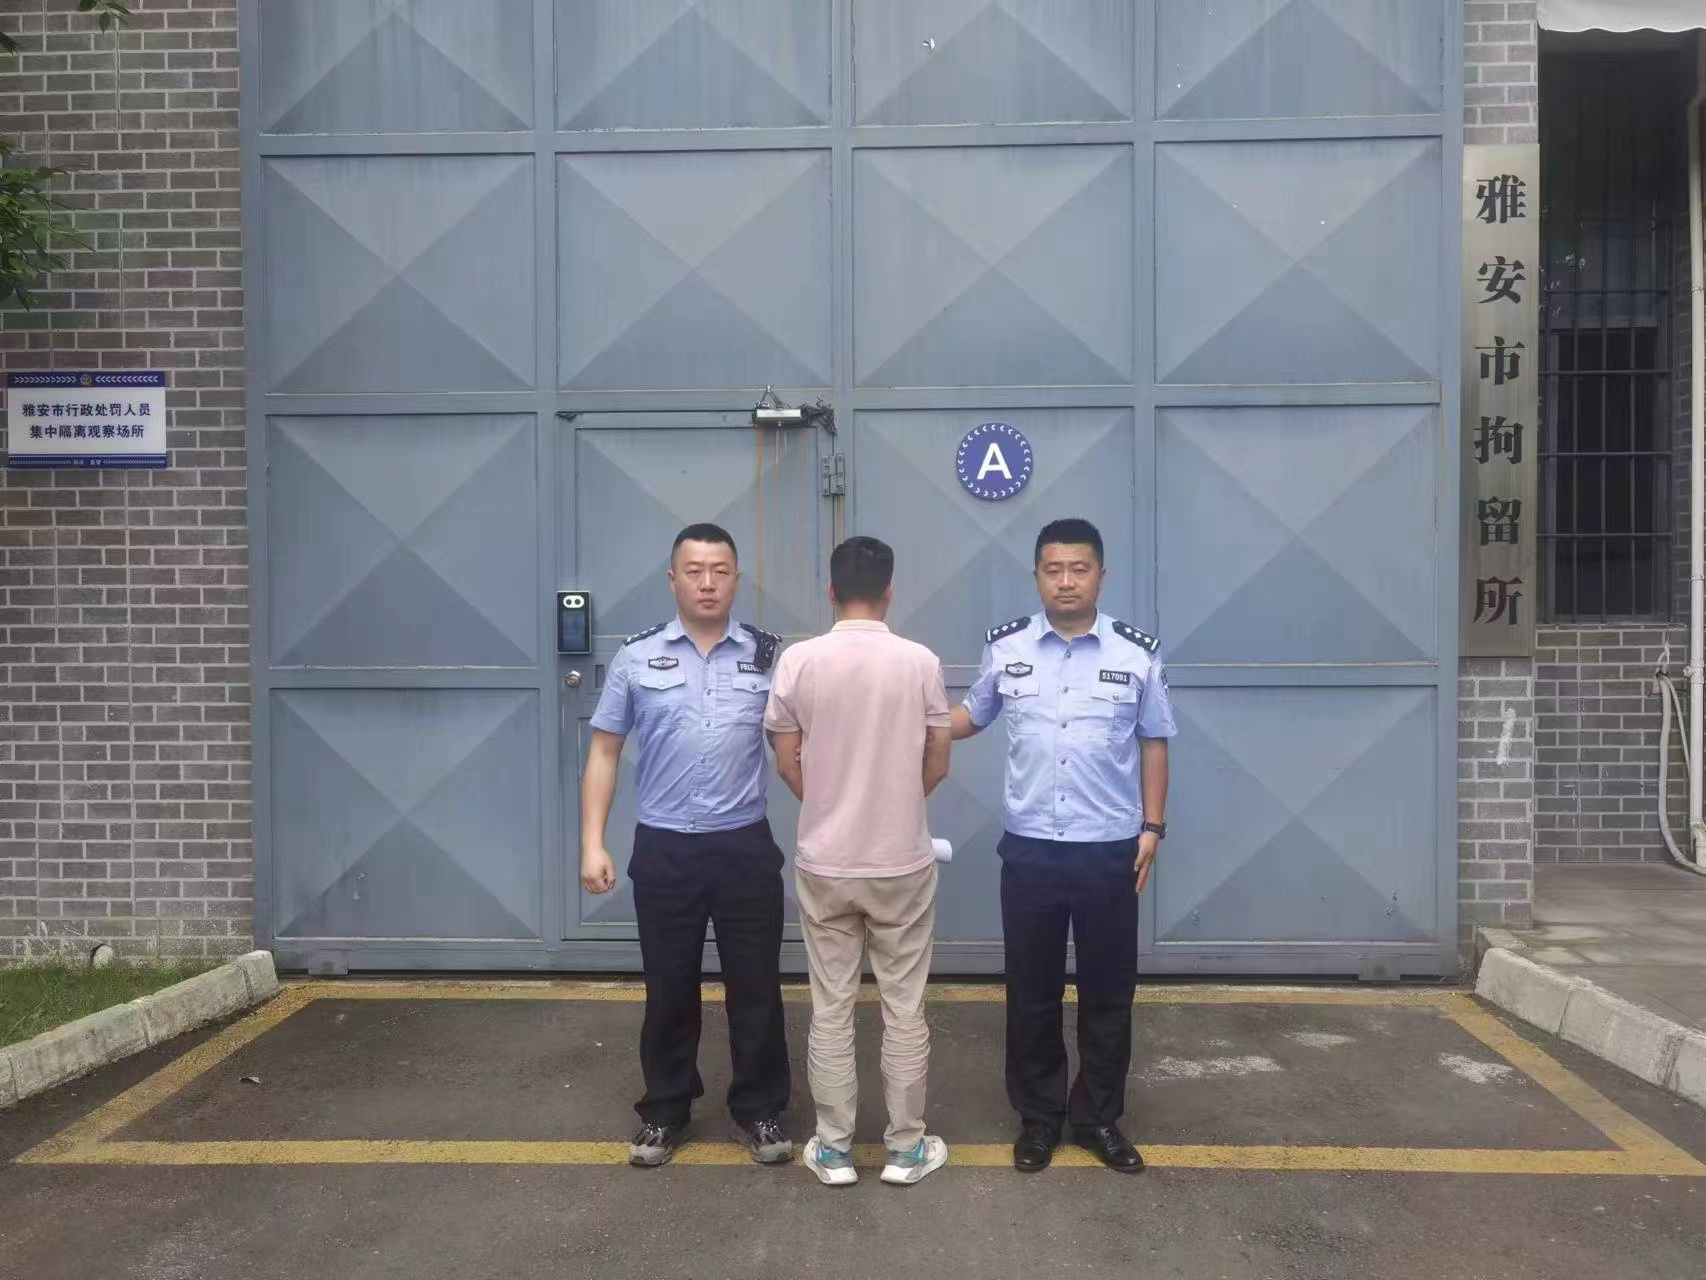 VR体验馆、谋生技能get……带你走进北京女子监狱|观察者网|服刑人员|女子监狱_新浪新闻